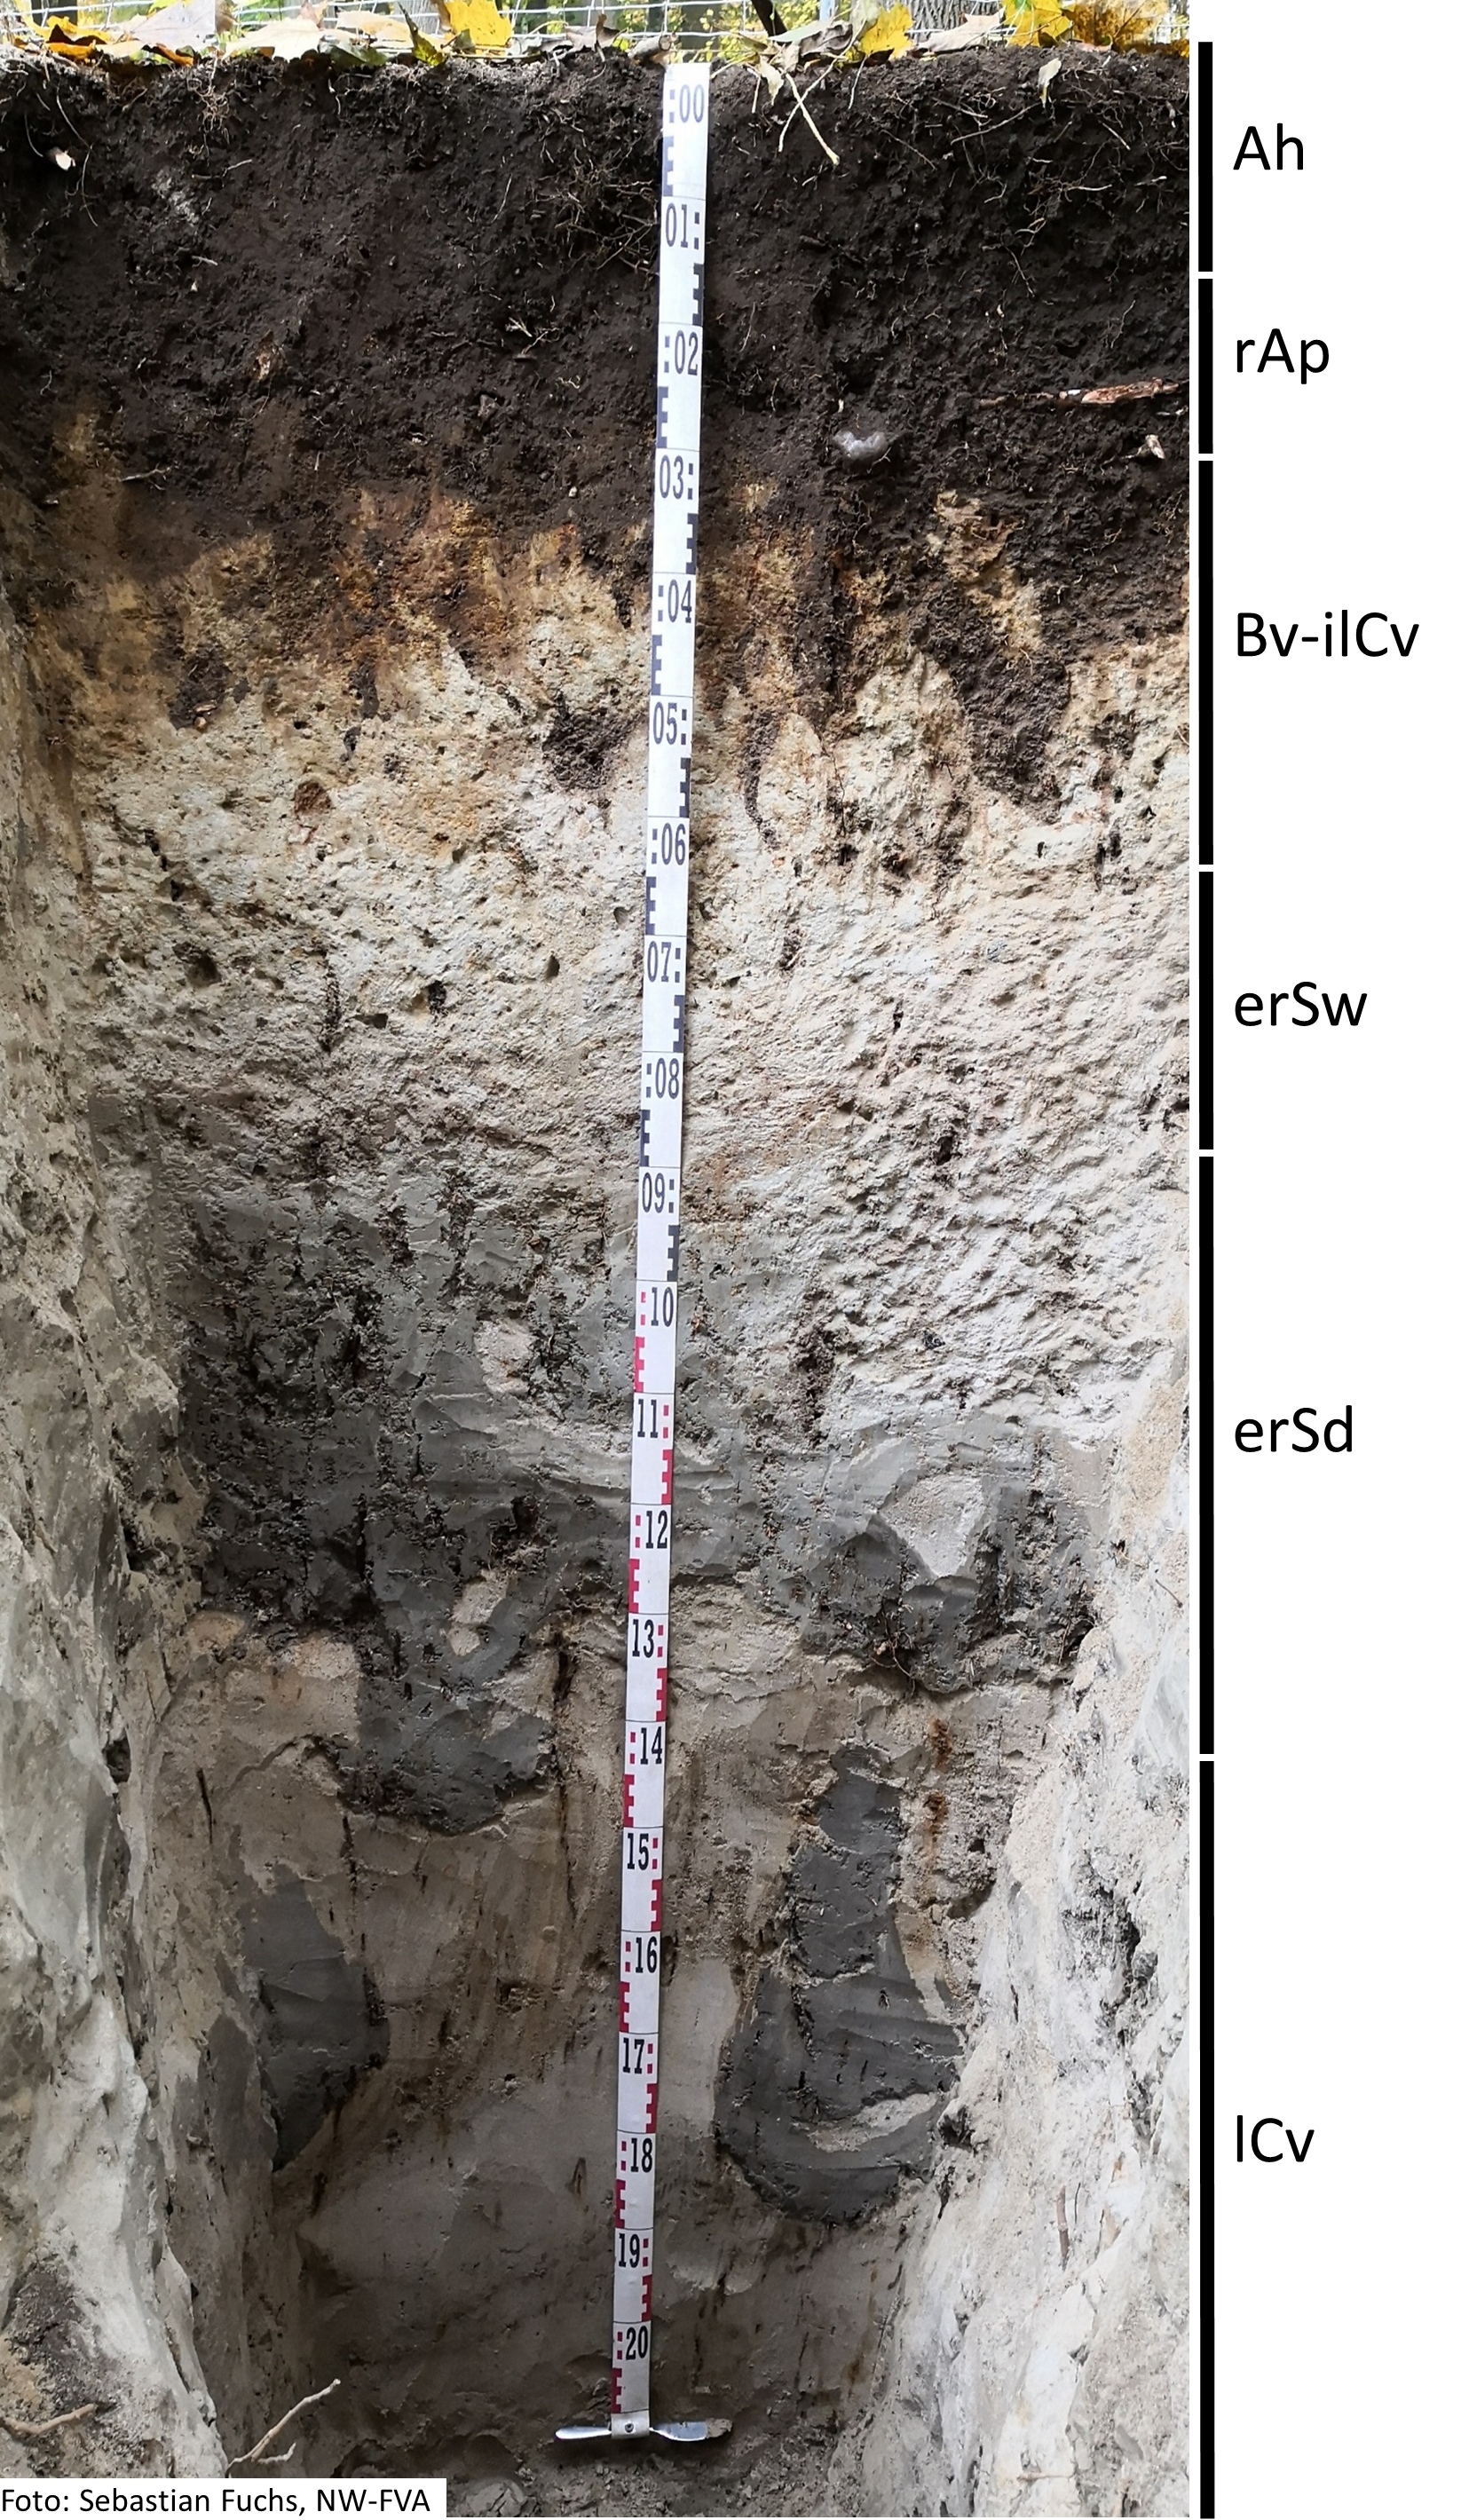 Das Foto zeigt einen senkrechten Schnitt durch den Boden der Untersuchungsfläche. Das Bodenprofil enthält folgende Bodenhorizonte: Ah, rAp, Bs-elCv, rSw. rSd, ICv